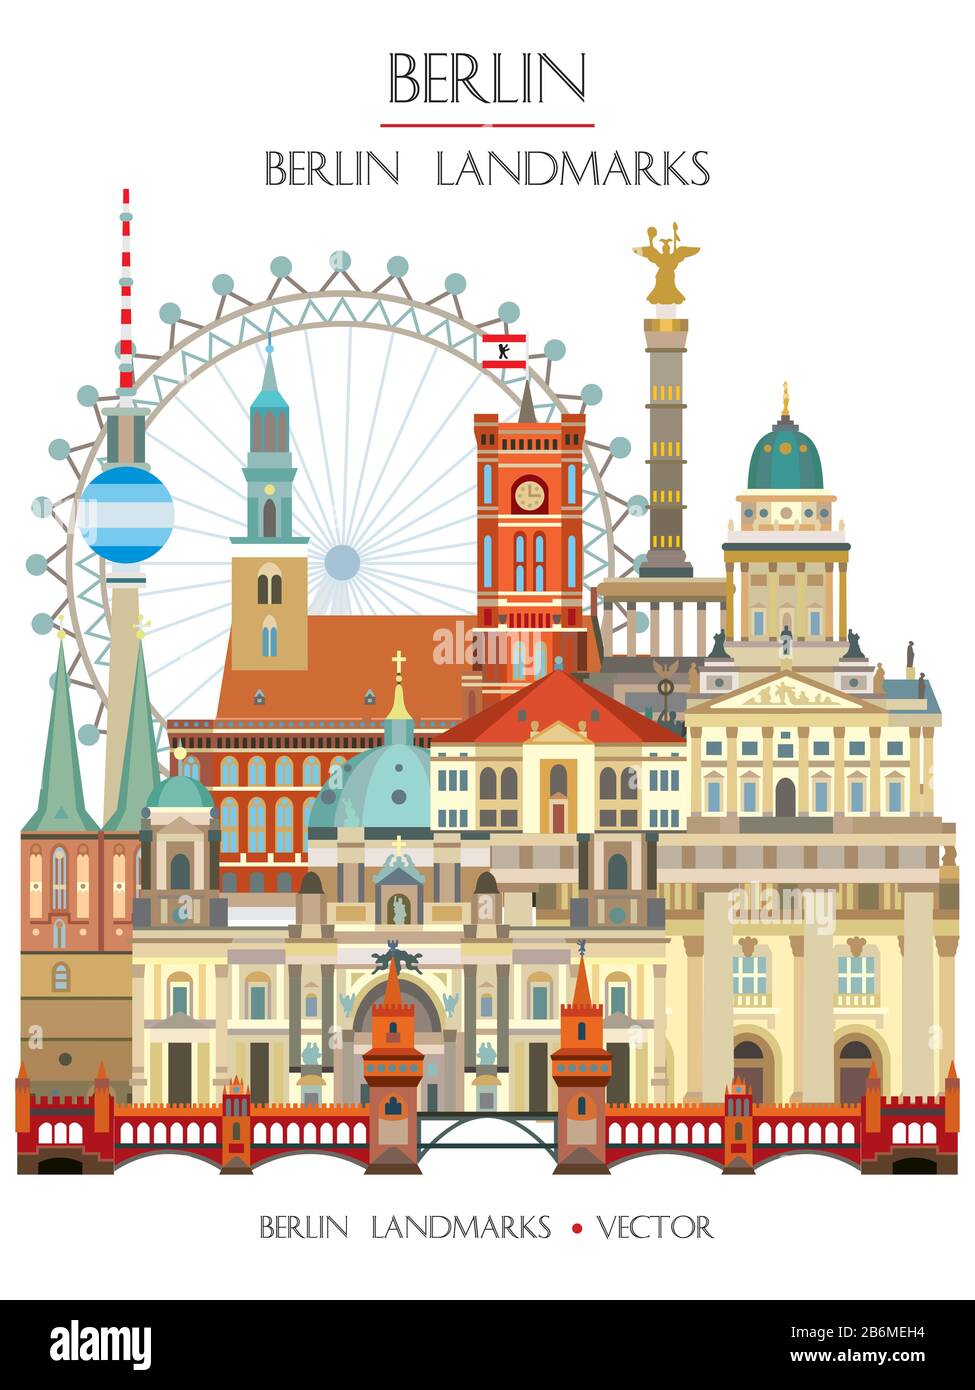 Colorata illustrazione vettoriale dei principali monumenti storici di Berlino, vista frontale, famose attrazioni di Berlino, Germania. Immagine piatta verticale vettoriale isolata su Illustrazione Vettoriale